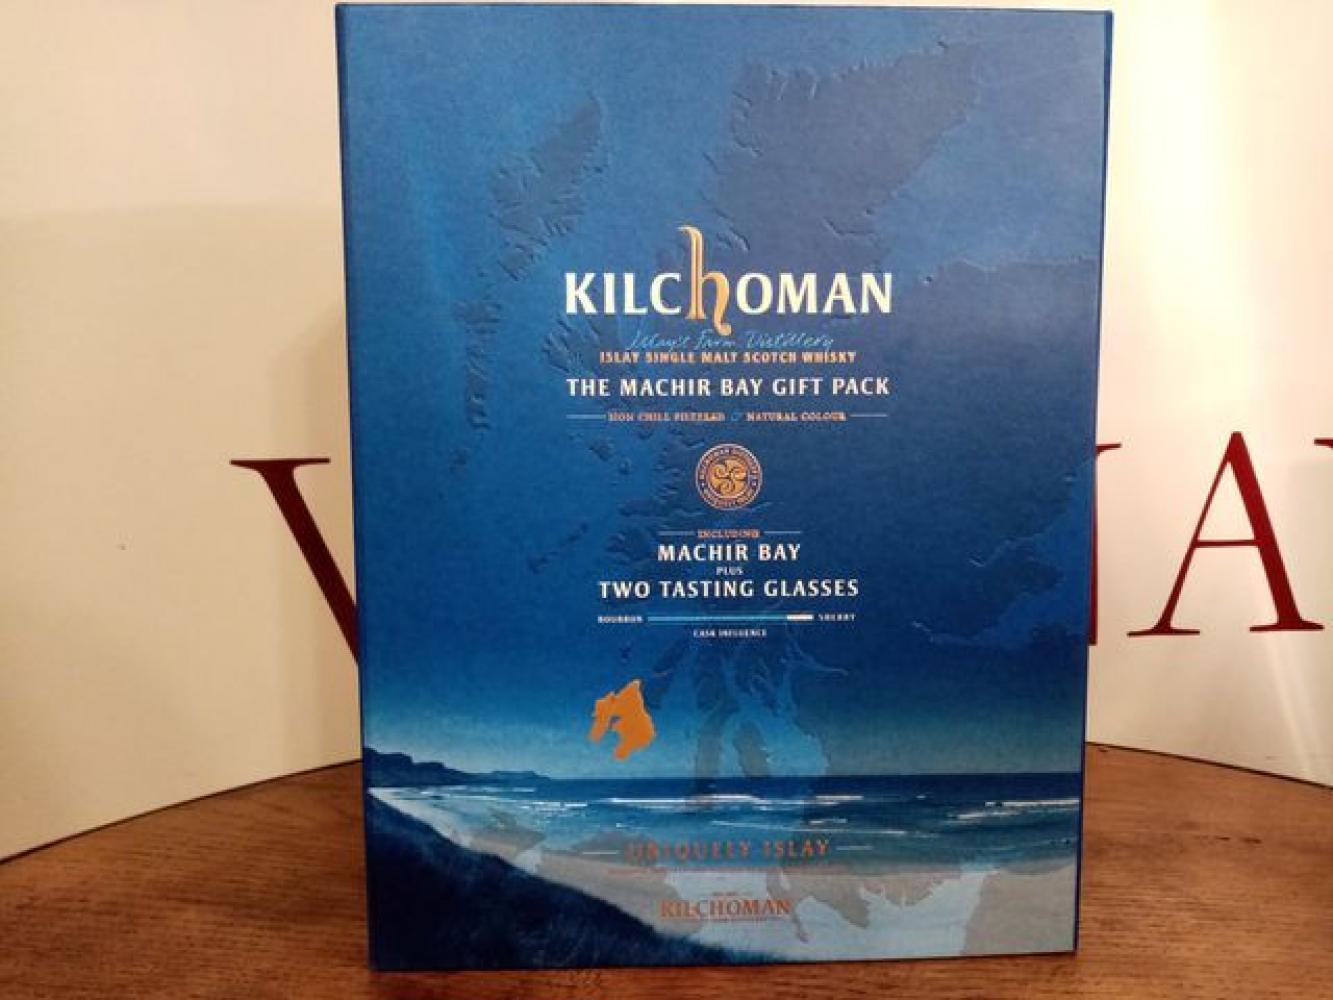 Kilchoman "Machir Bay"